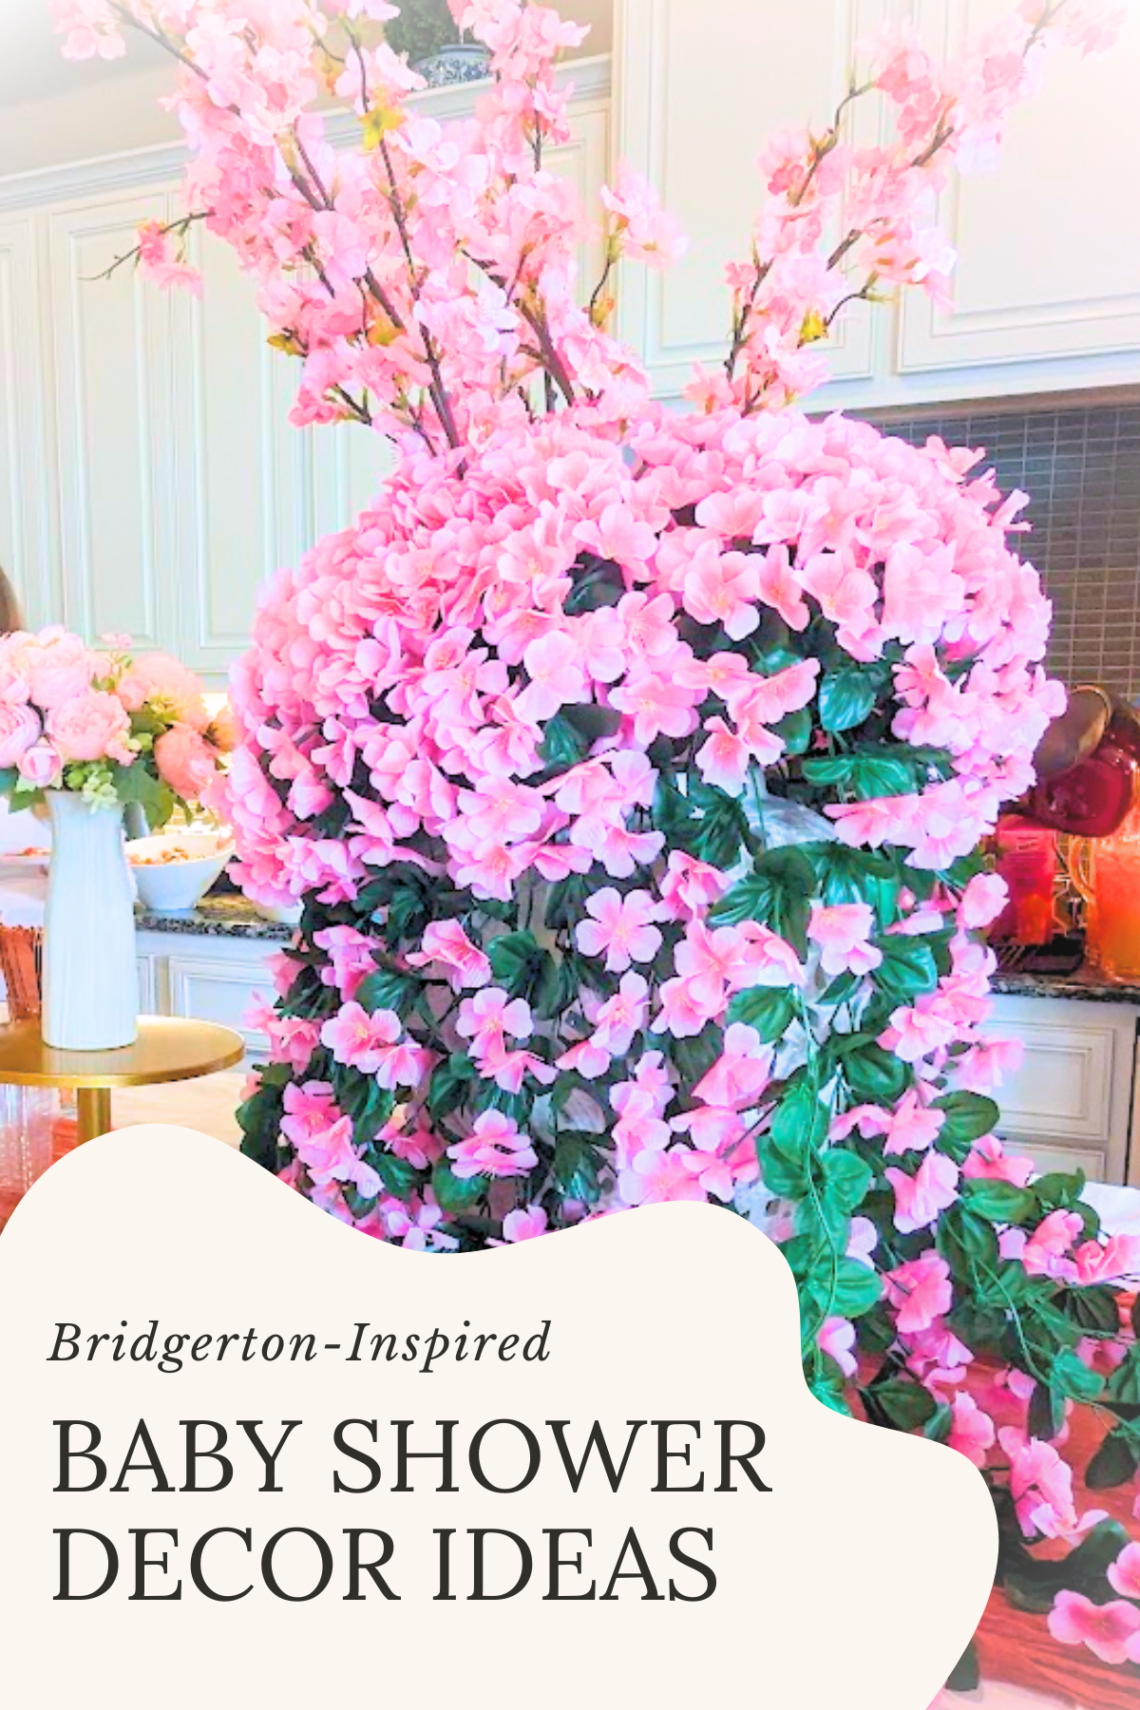 Bridgerton-Inspired Baby Shower Decor Ideas Elegant and Timeless Tips for Your Celebration